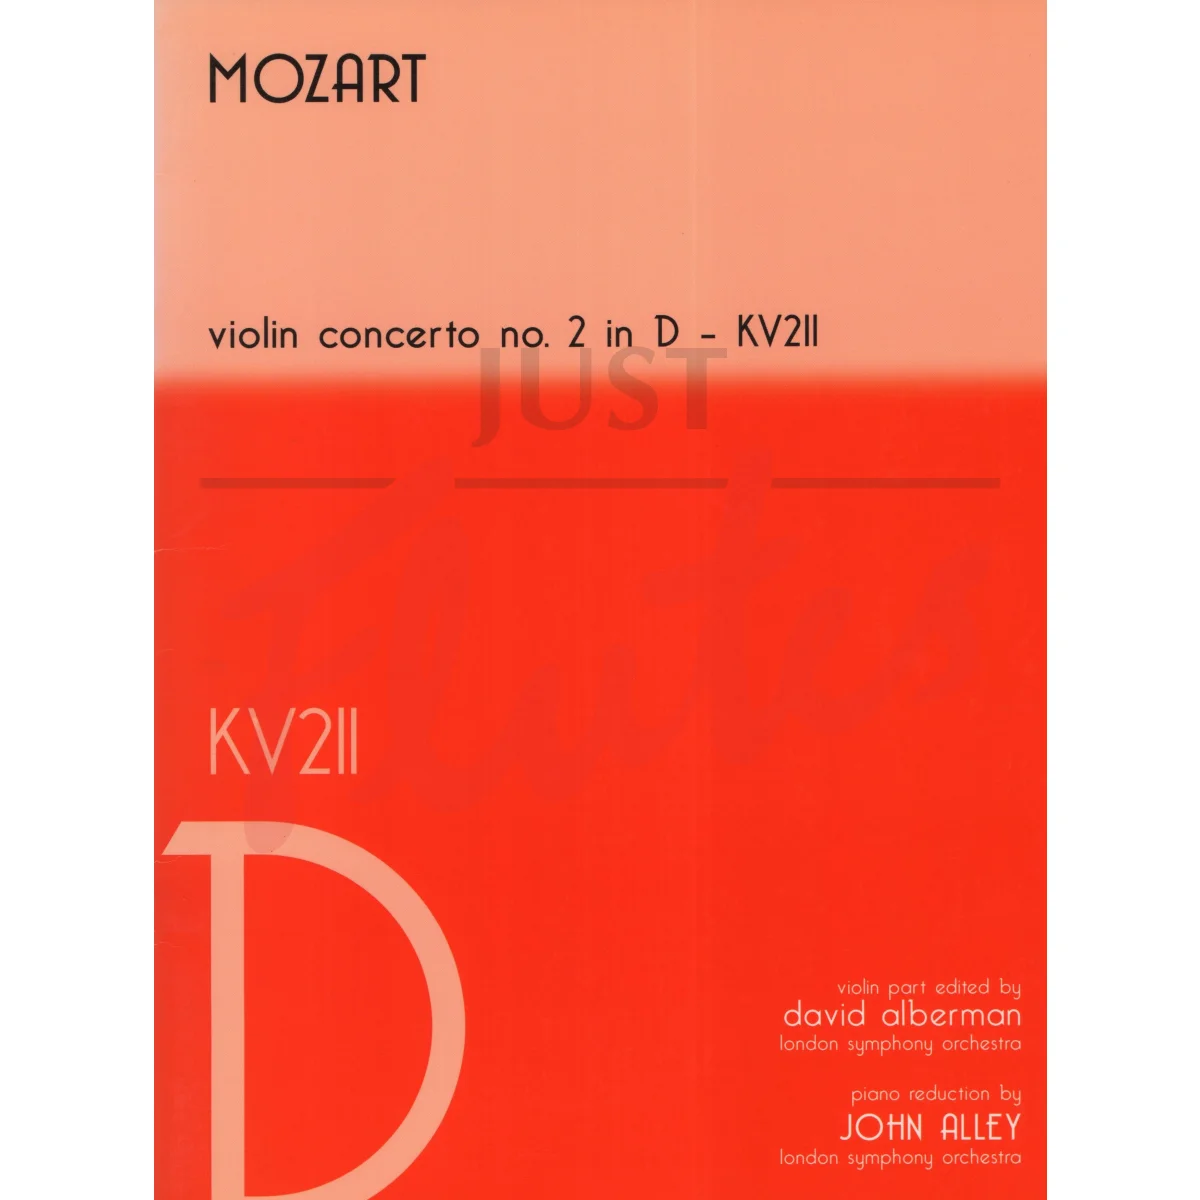 Violin Concerto No 2 in D